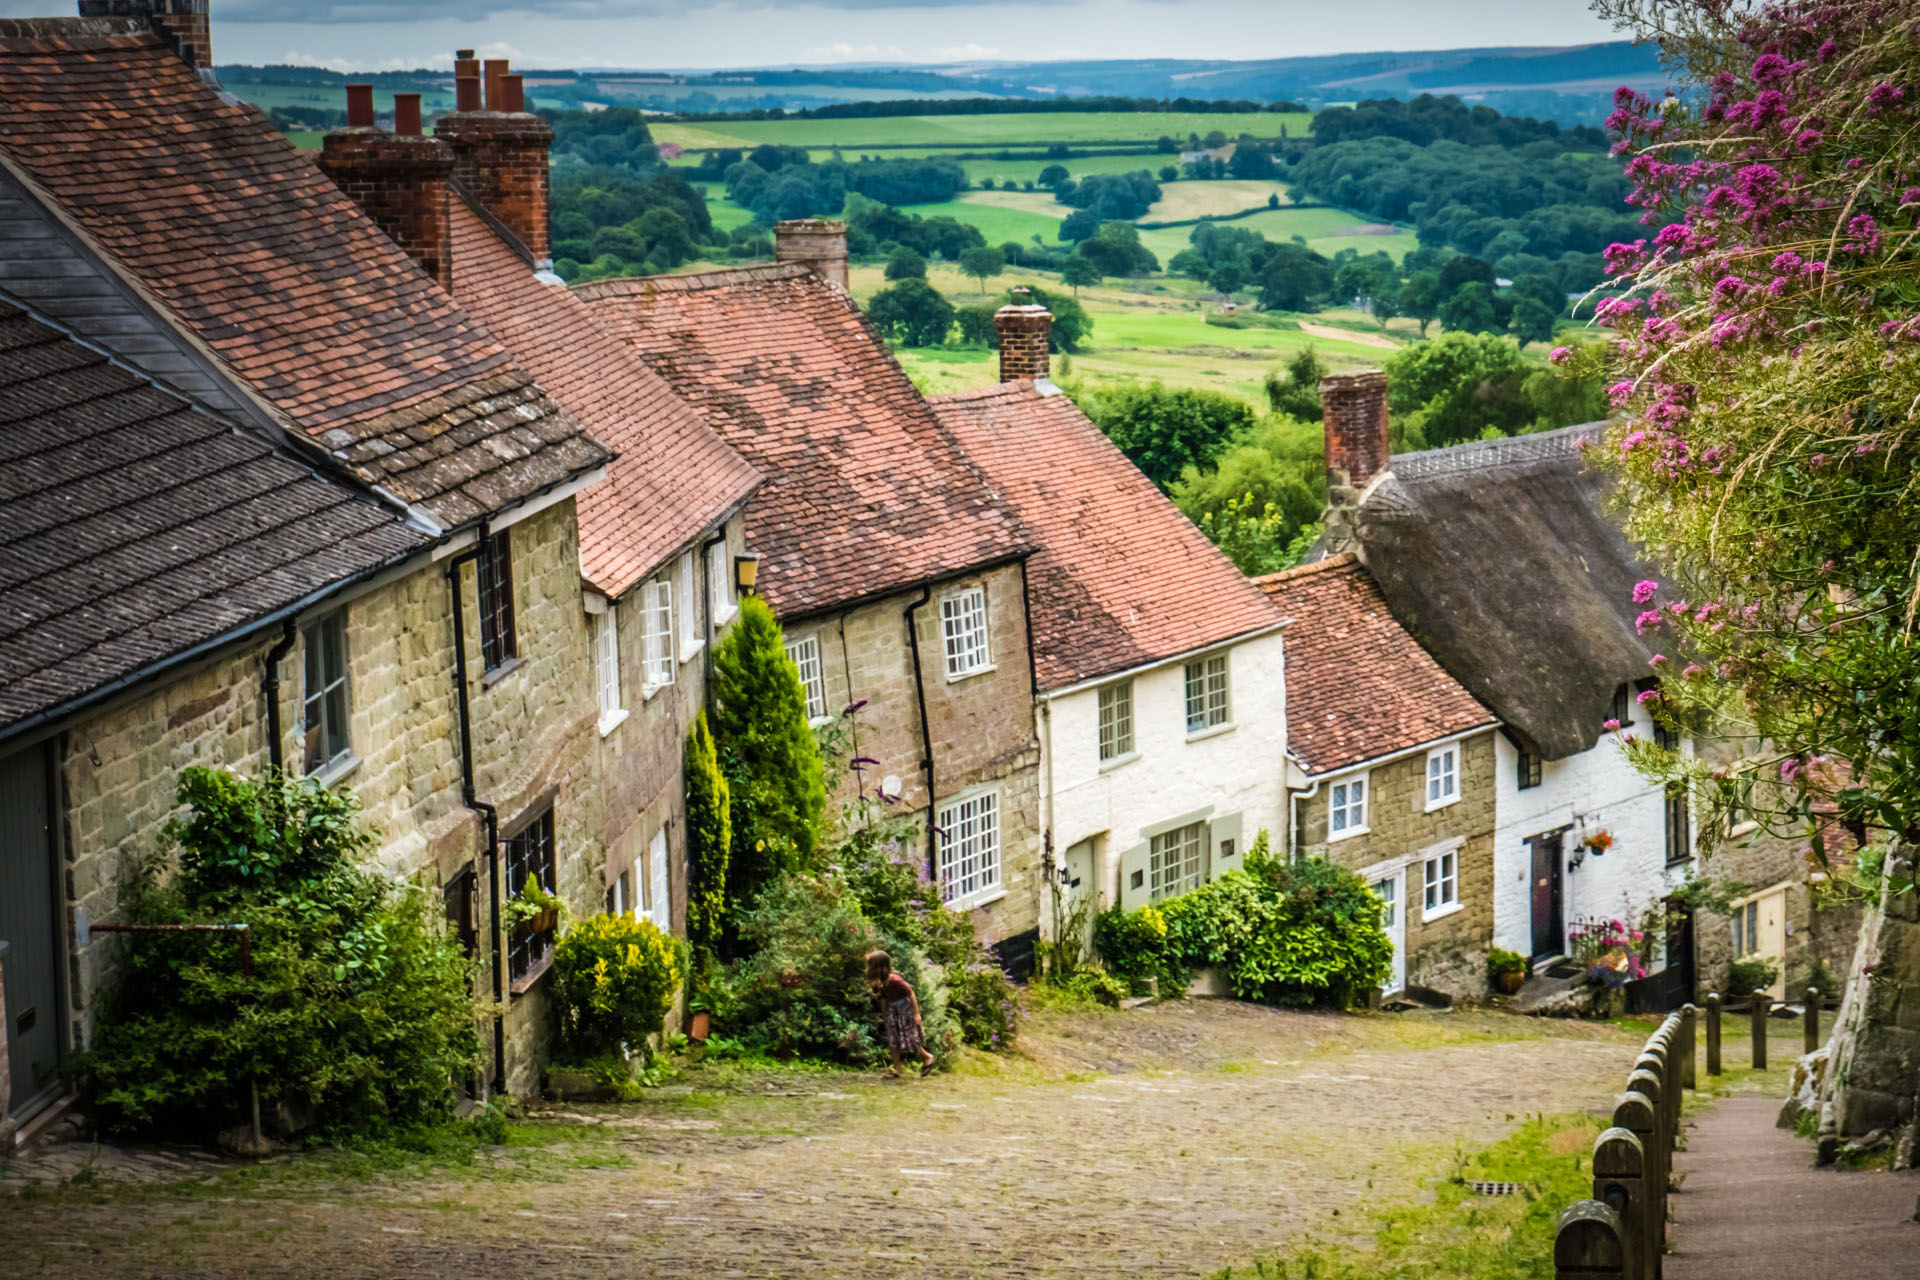 イギリスの田舎の風景 ライムストーンの古い家々が並ぶ風景 イギリスの風景 Beautiful 世界の絶景 美しい景色